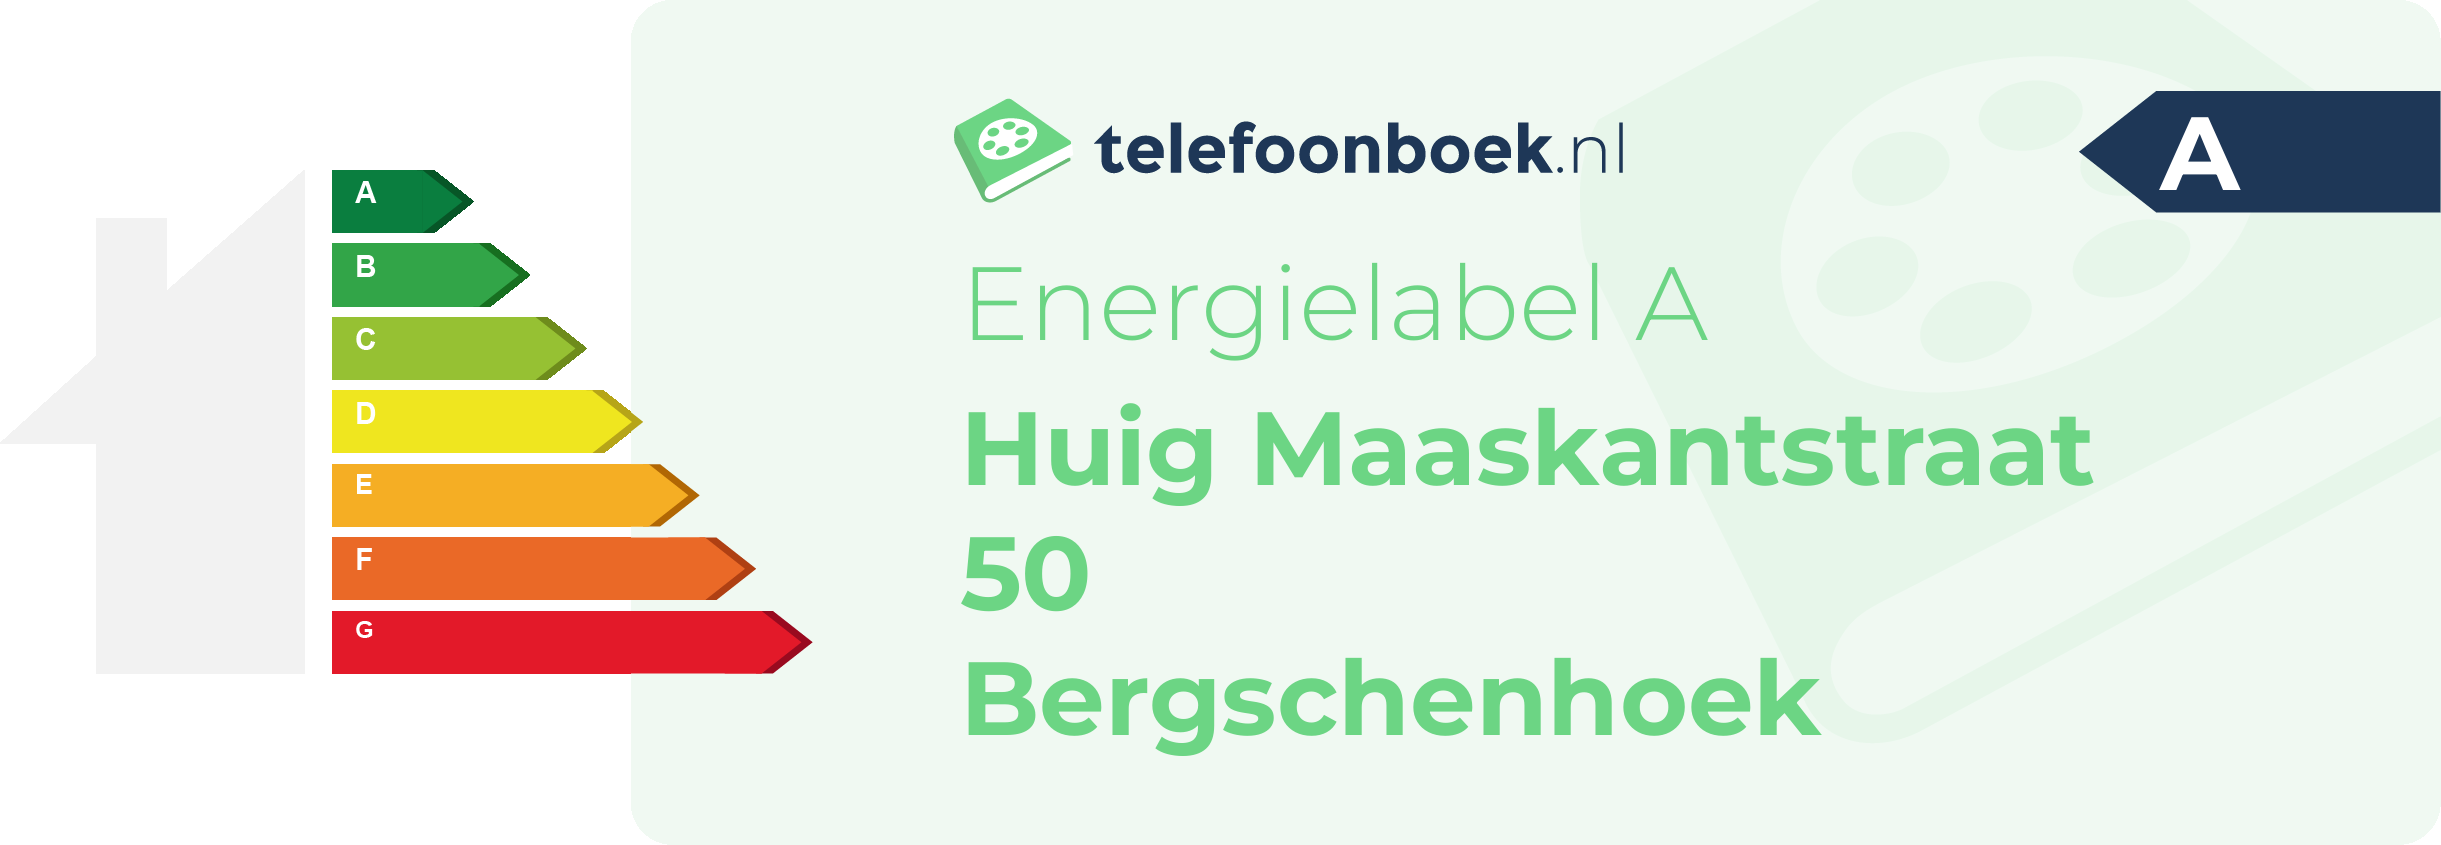 Energielabel Huig Maaskantstraat 50 Bergschenhoek